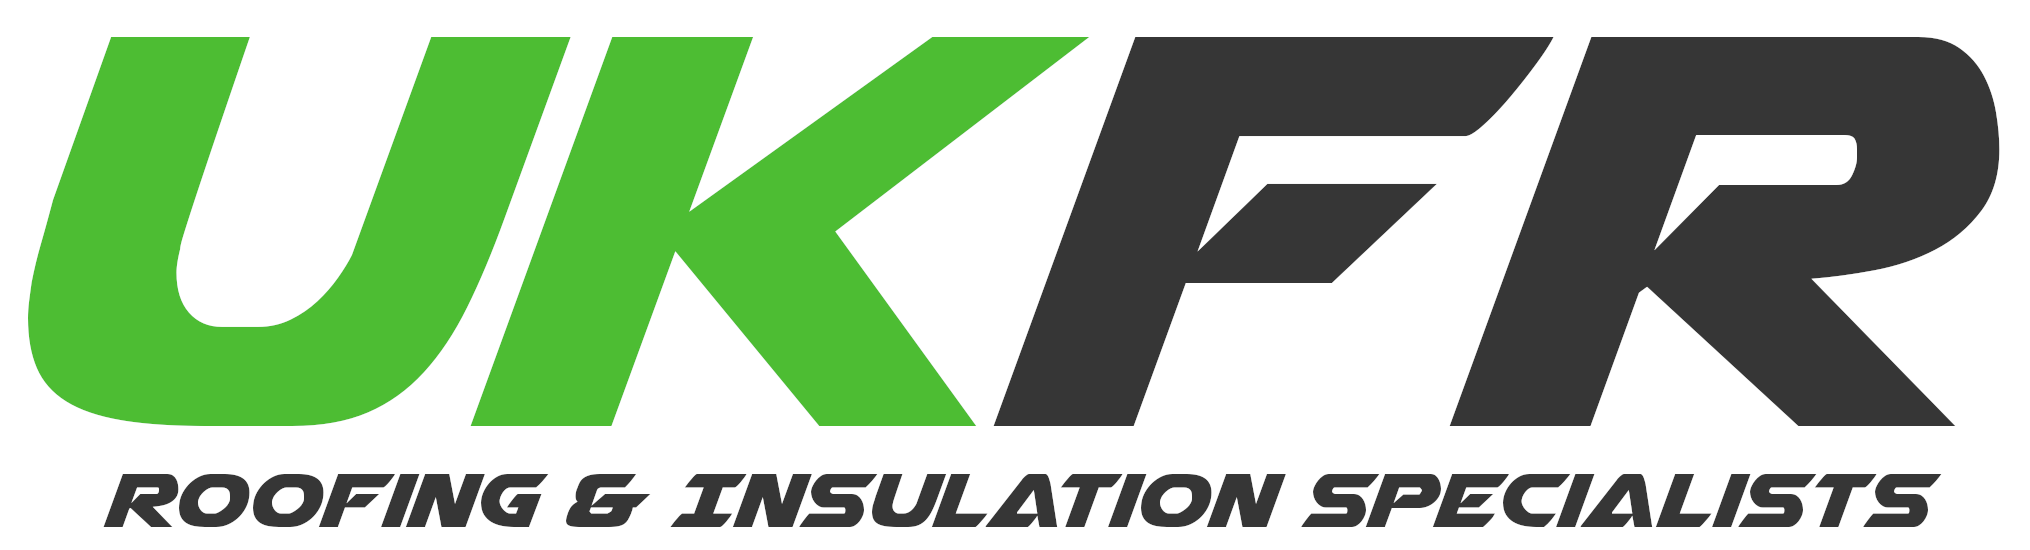 UKFR Roofing & Insulation Specialists 